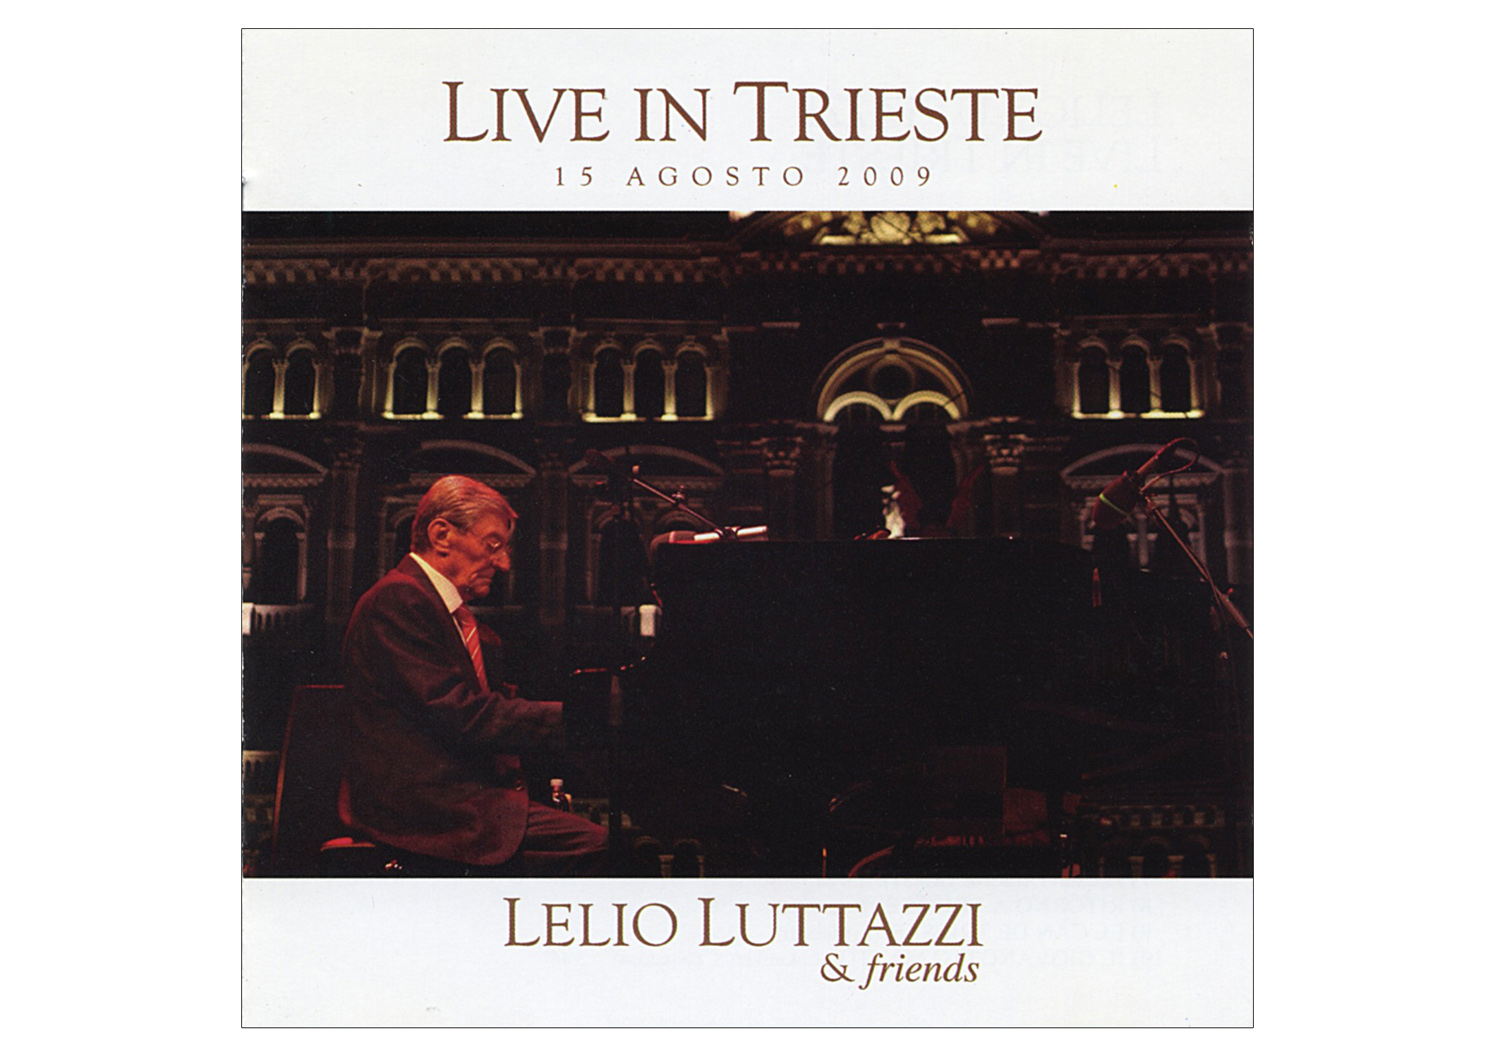 Copertina del CD "Lelio Luttazzi and friends", edito da Blue Serge edizioni musicali. Fotografia di Massimo Goina.